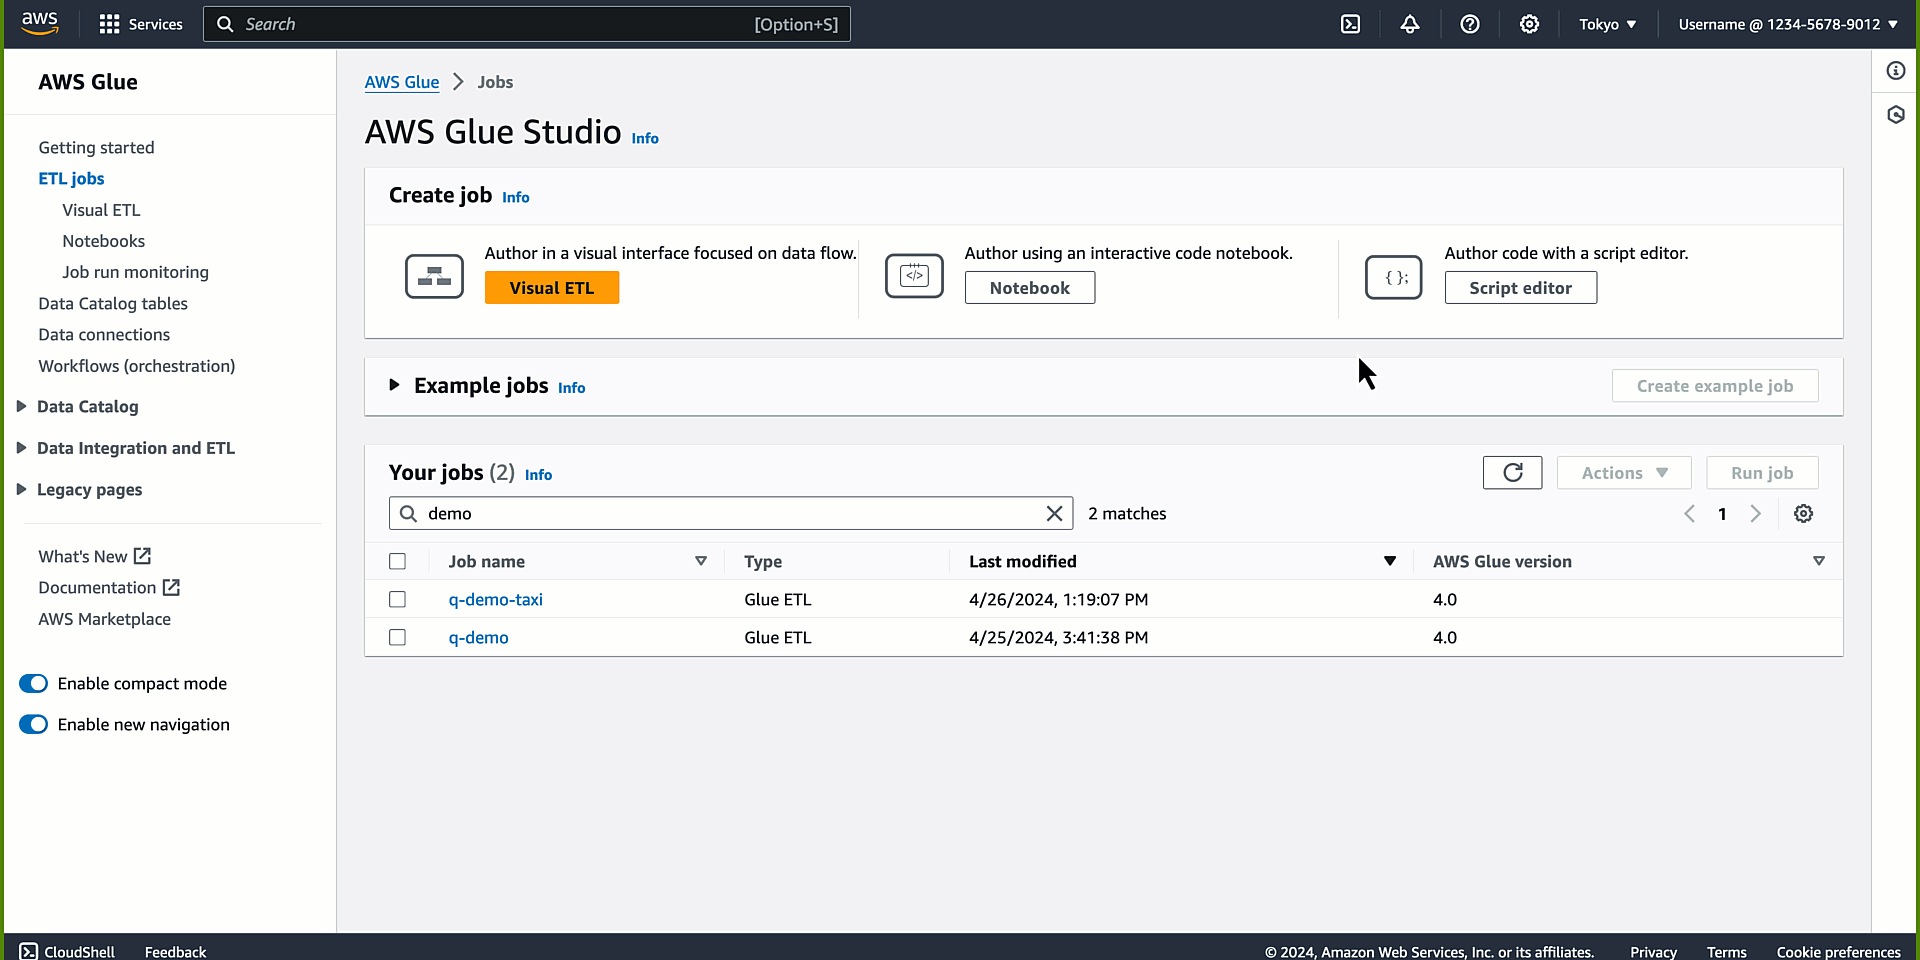 Um exemplo de uso da integração de dados do Amazon Q no AWS Glue.